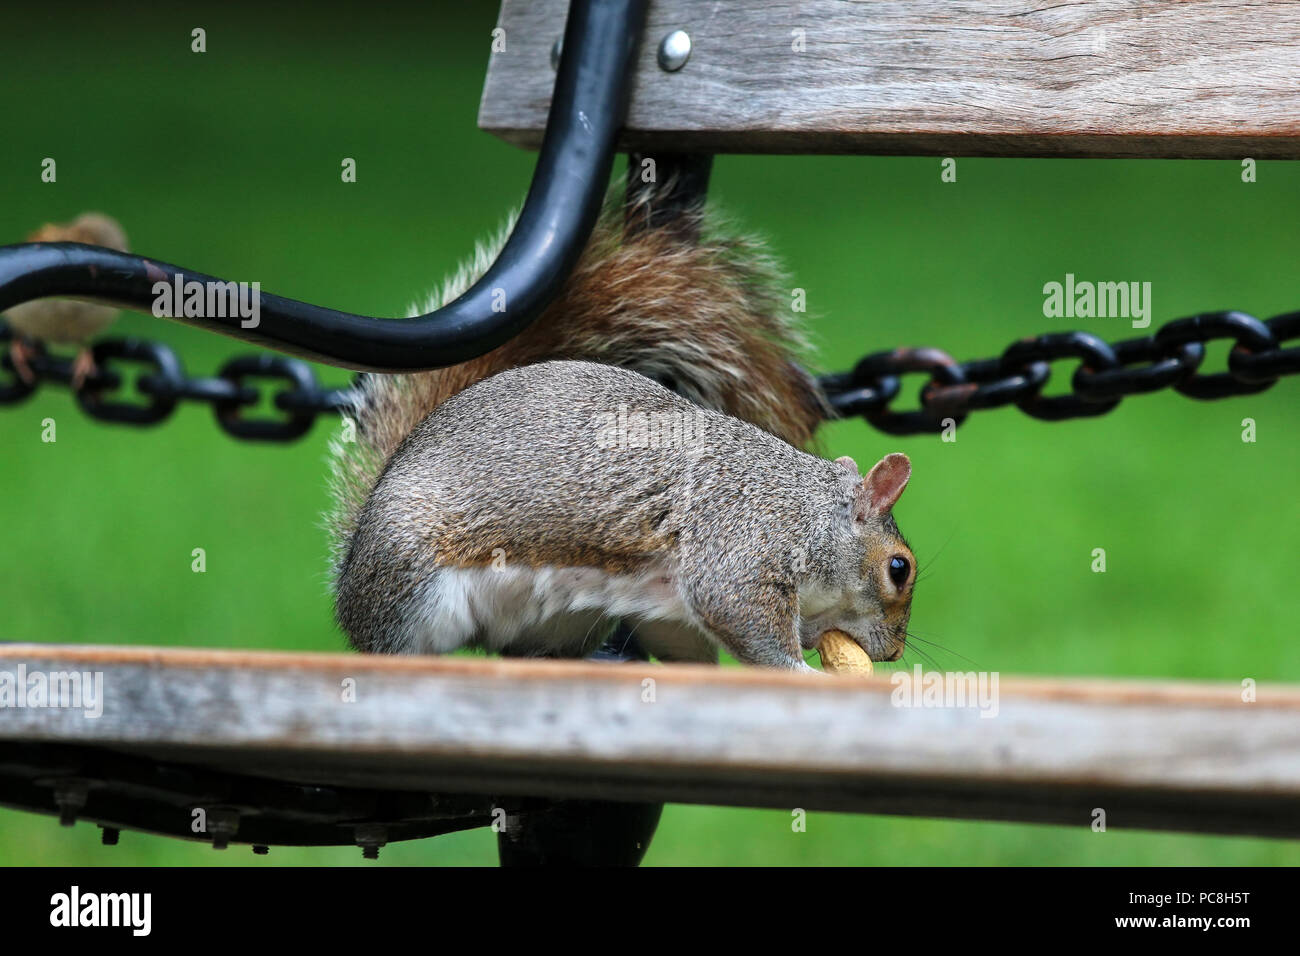 NEW YORK, NY - 10 juillet : Squirrel est titulaire d'une cacahuète sur un banc de parc de Washington Square à Manhattan le 10 juillet 2017 à New York, USA. Banque D'Images